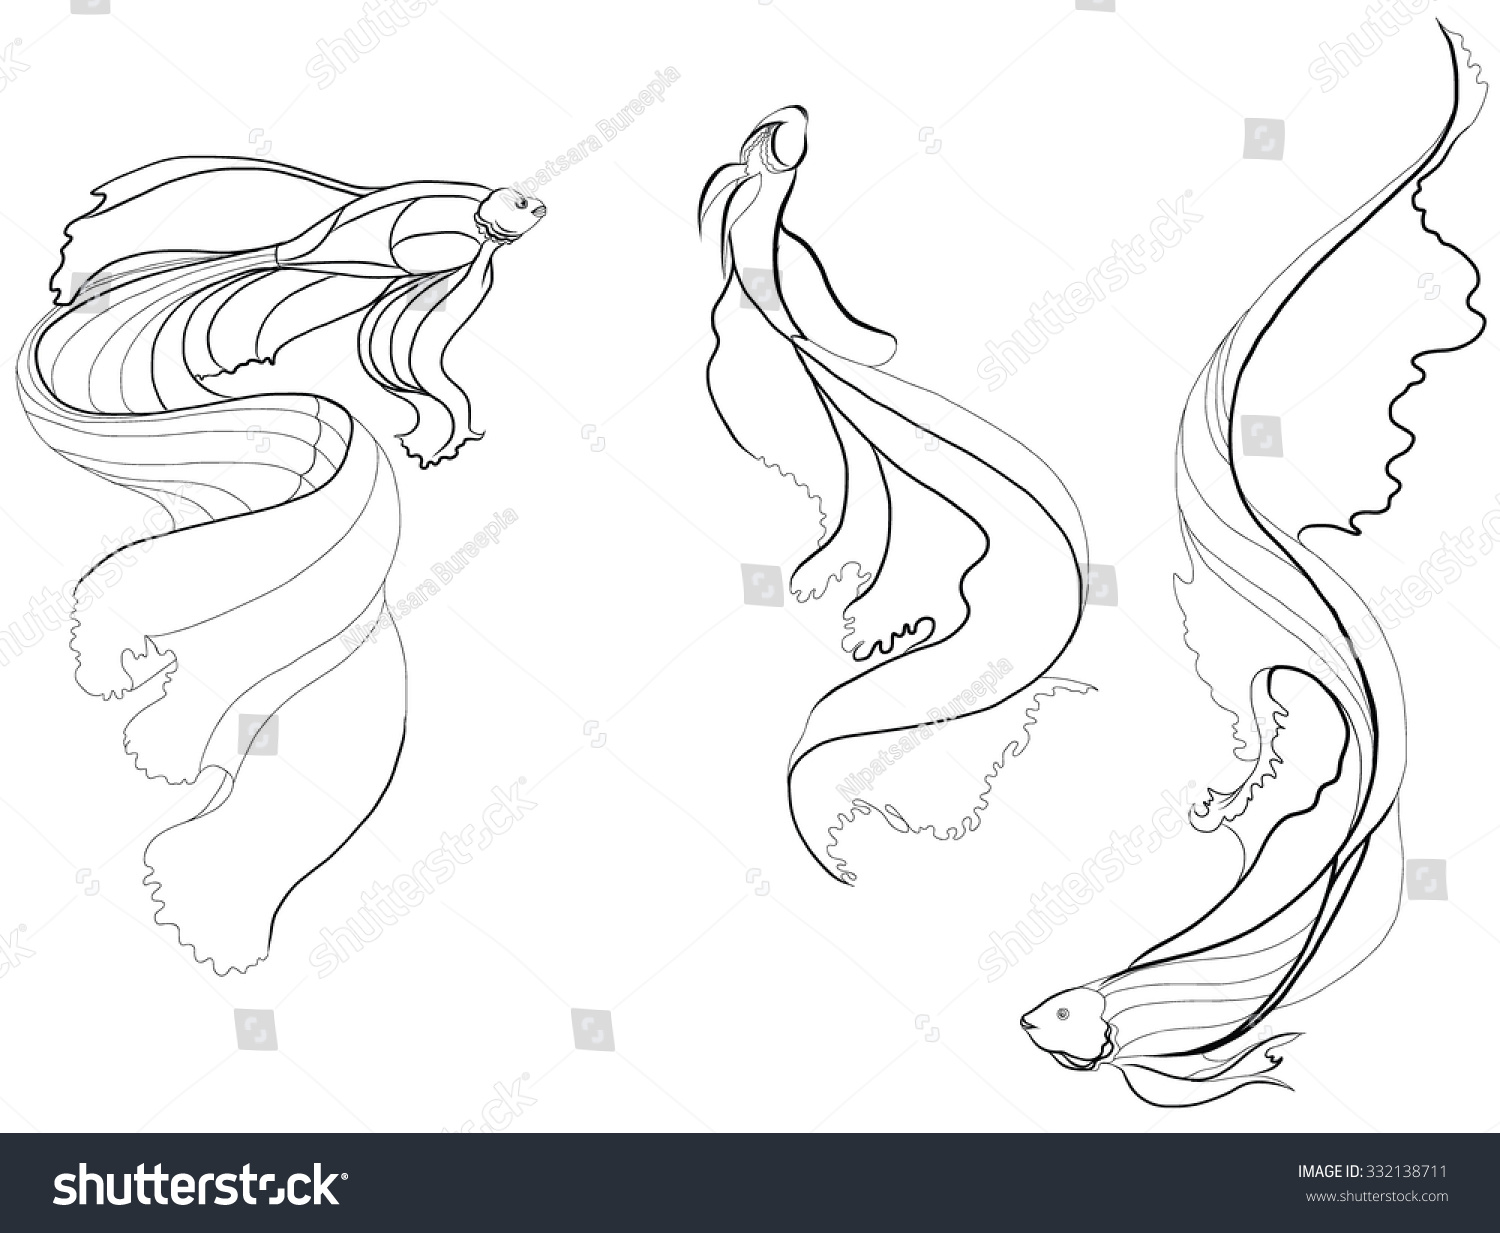 Doodle Art Beautiful Fish Vector Stock Vector 332138711 Shutterstock